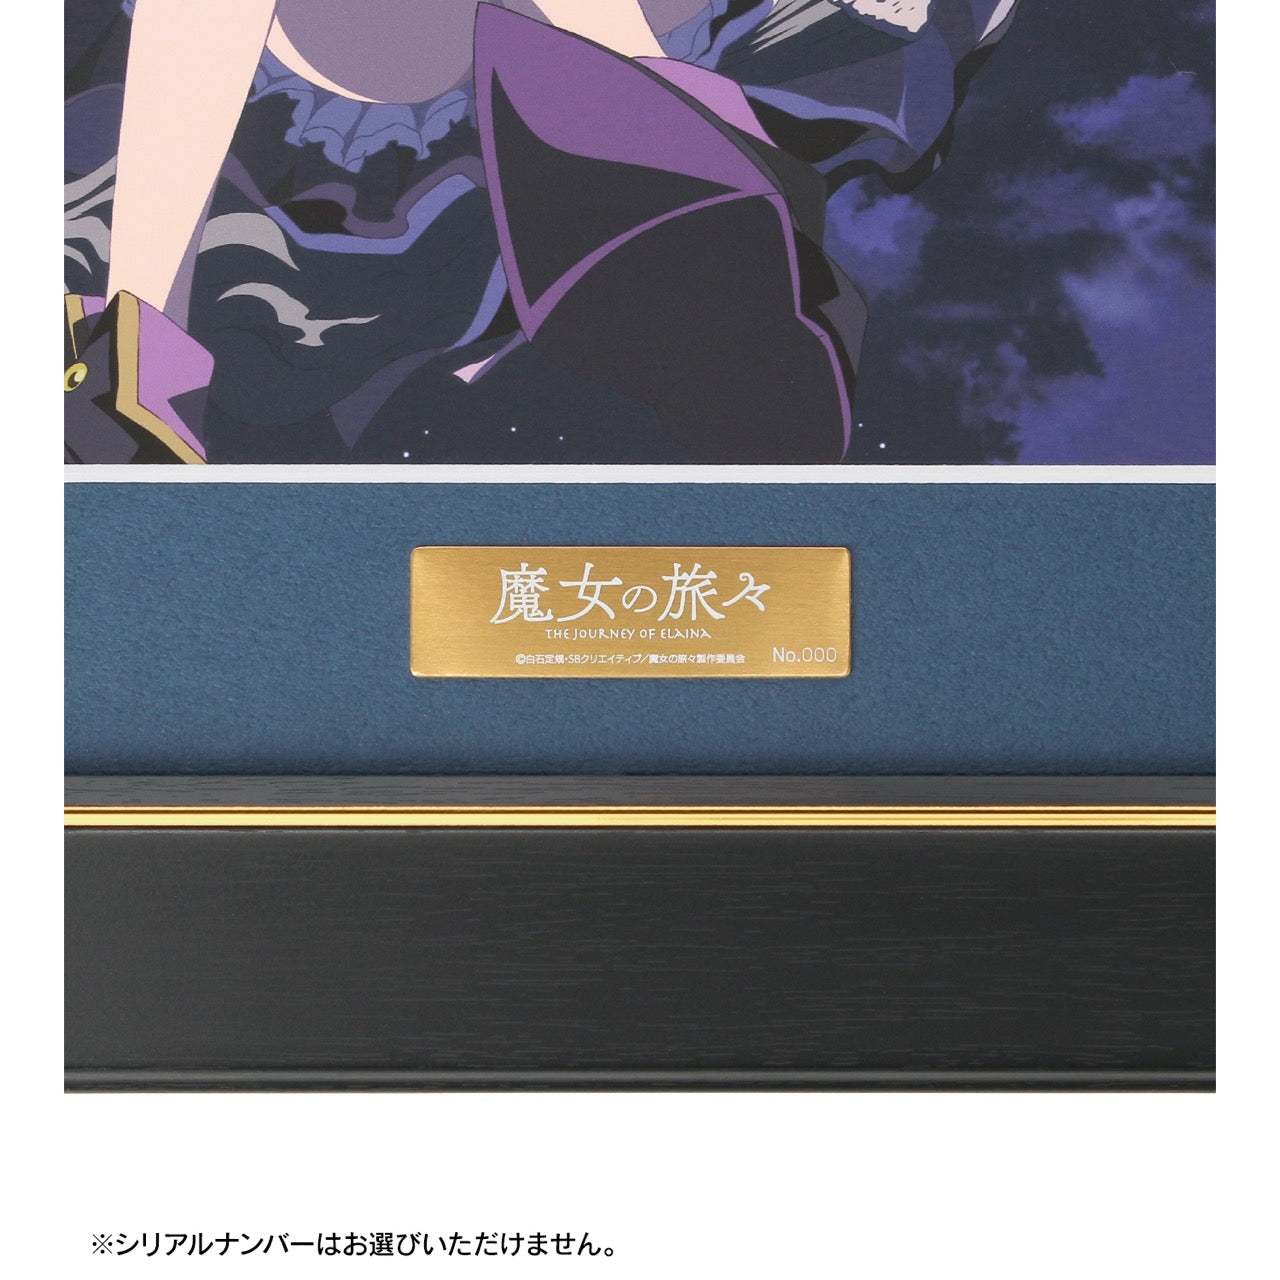 魔女の旅々』キャラファイングラフ vol.8 – Anime Store JP